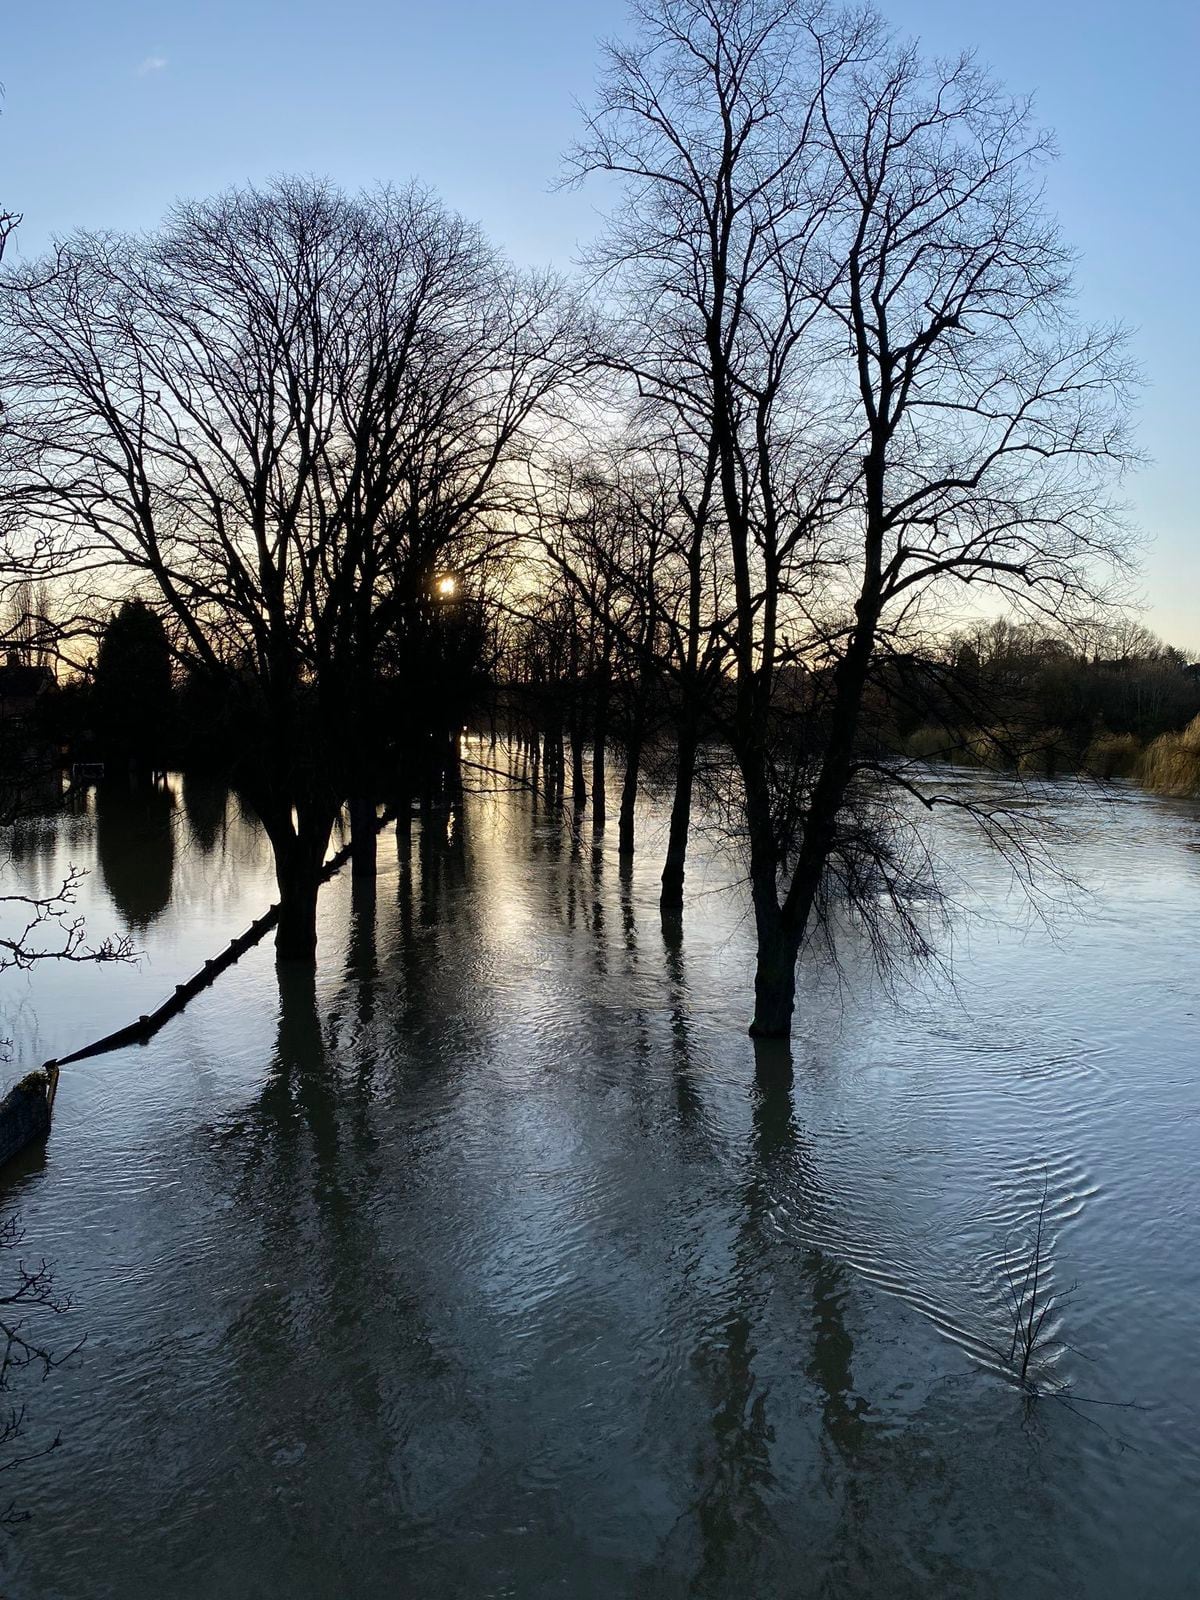 Flooding in Shrewsbury. Photo: Tim Atherton @wmastatherton